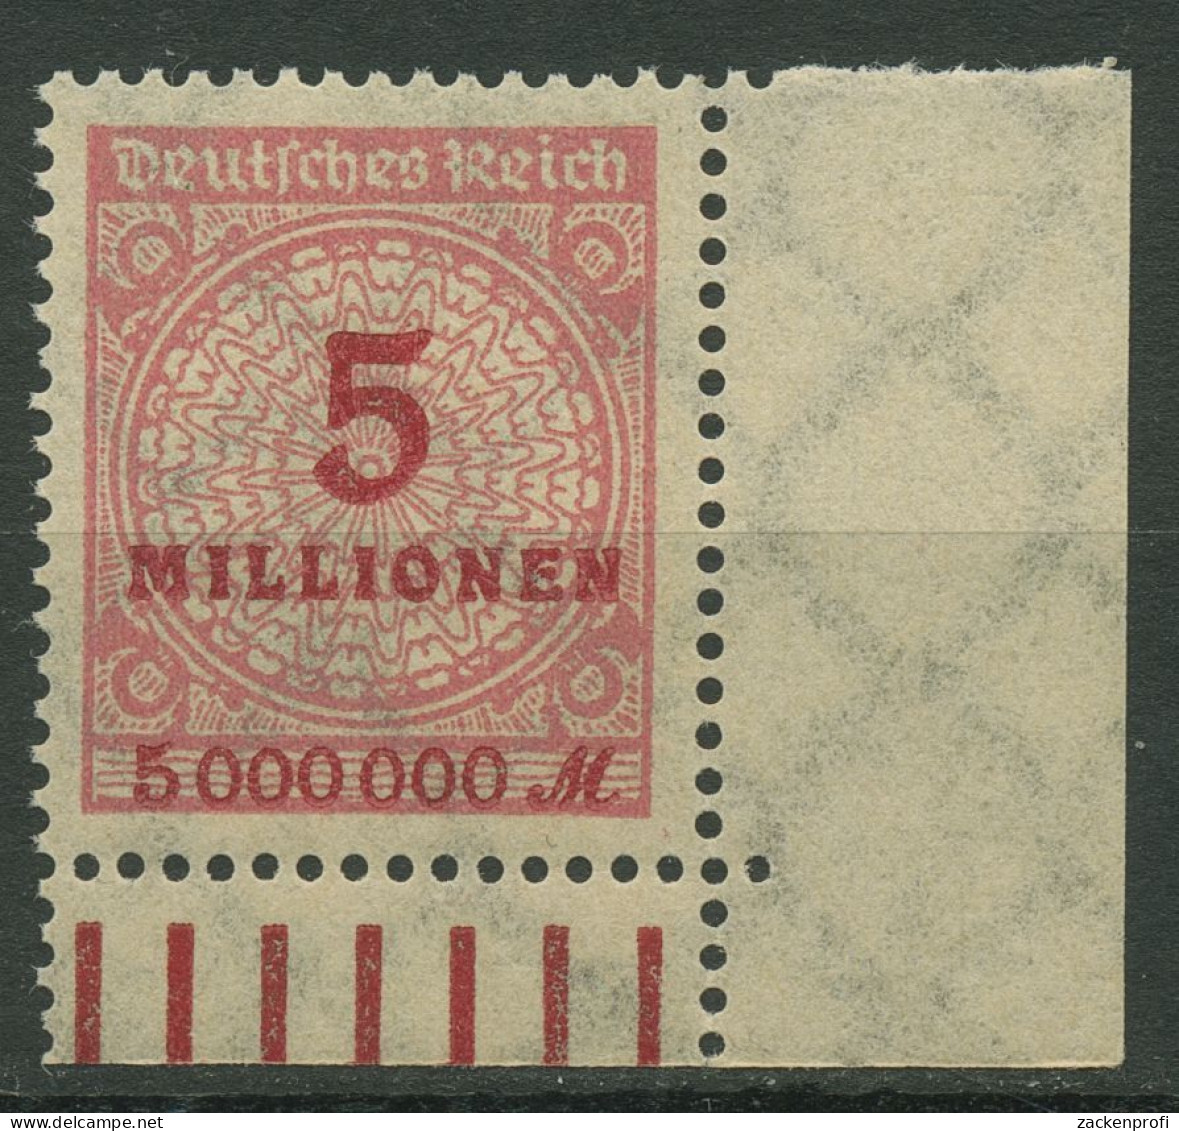 Deutsches Reich Inflation 1923 Korbdeckel Walze 317 AW Ecke Unt. Re. Postfrisch - Neufs